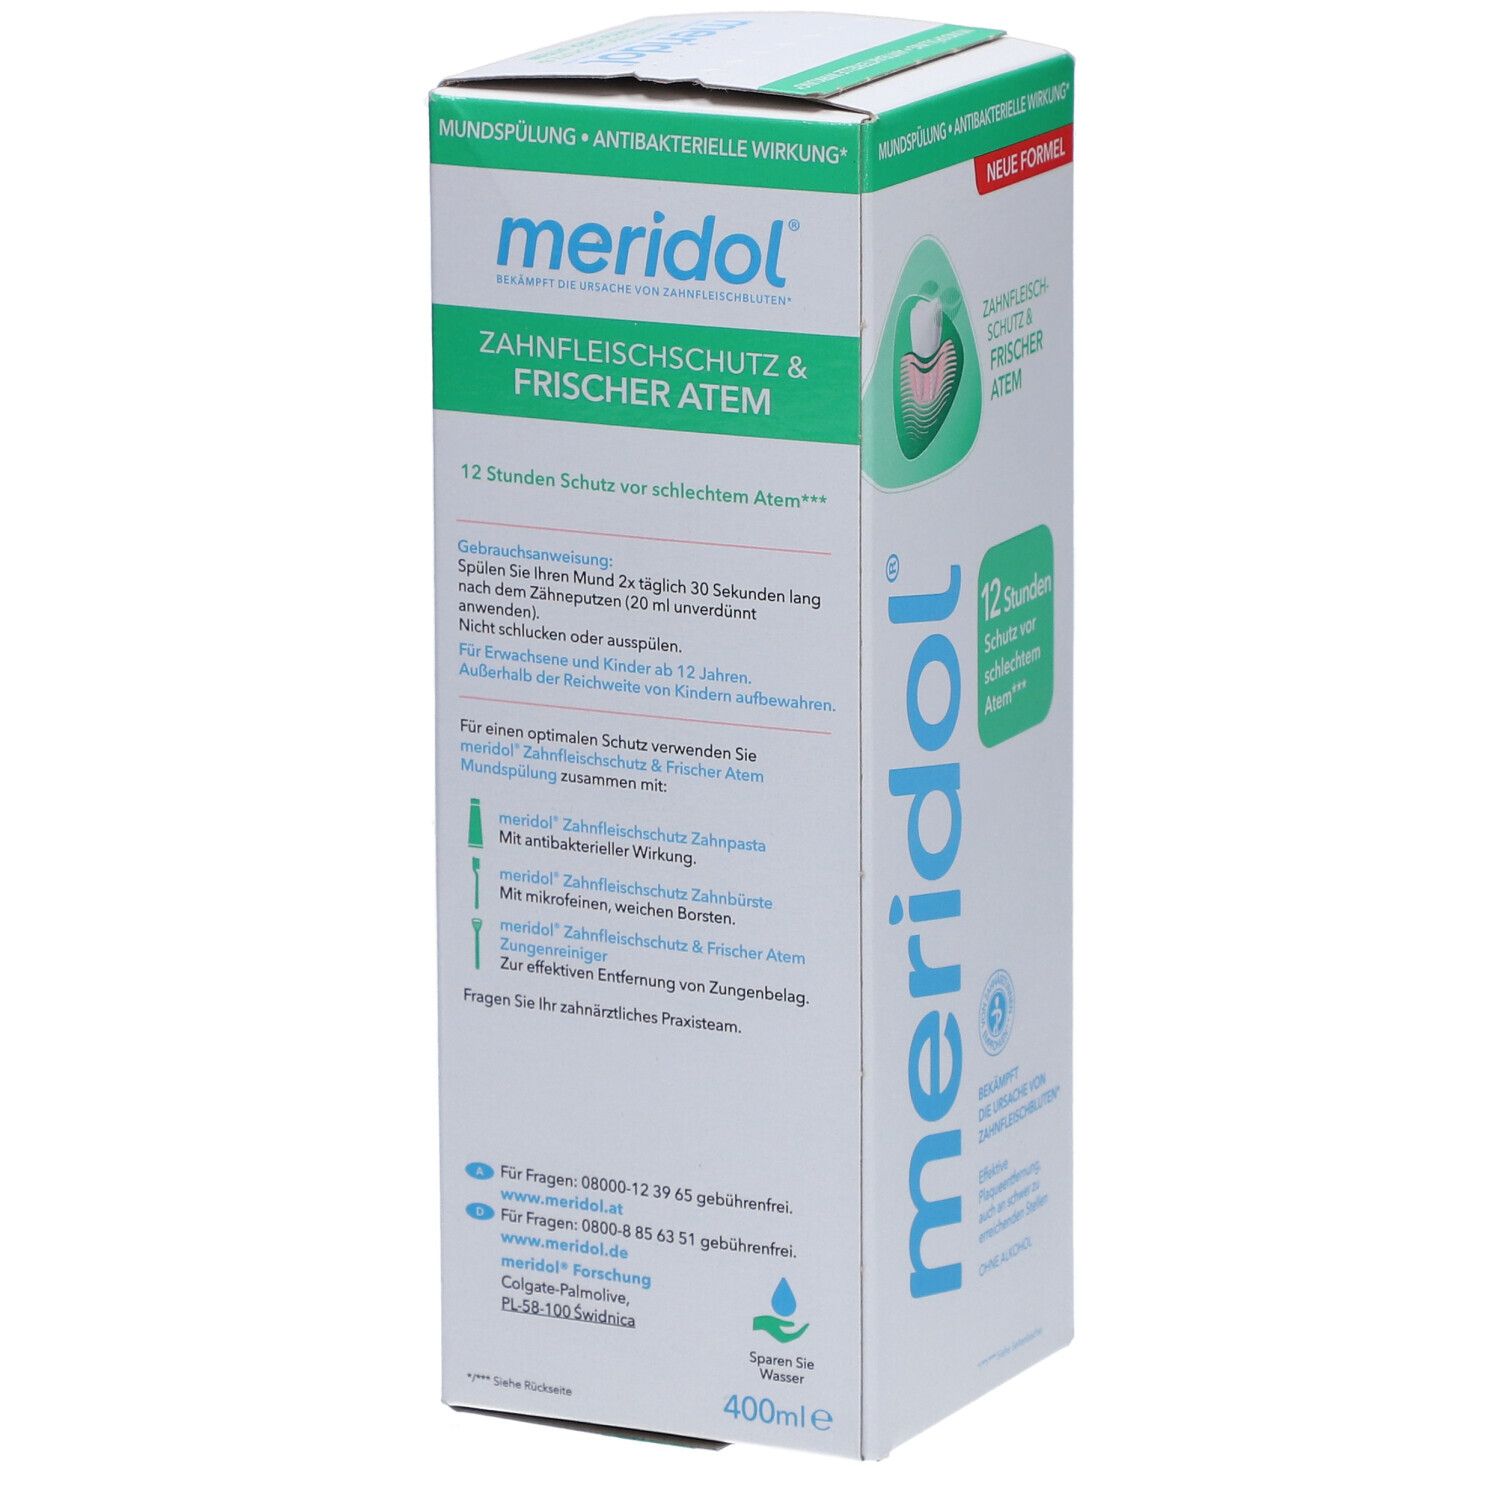 meridol Zahnfleischschutz & Frischer Atem Mundspülung gegen Mundgeruch